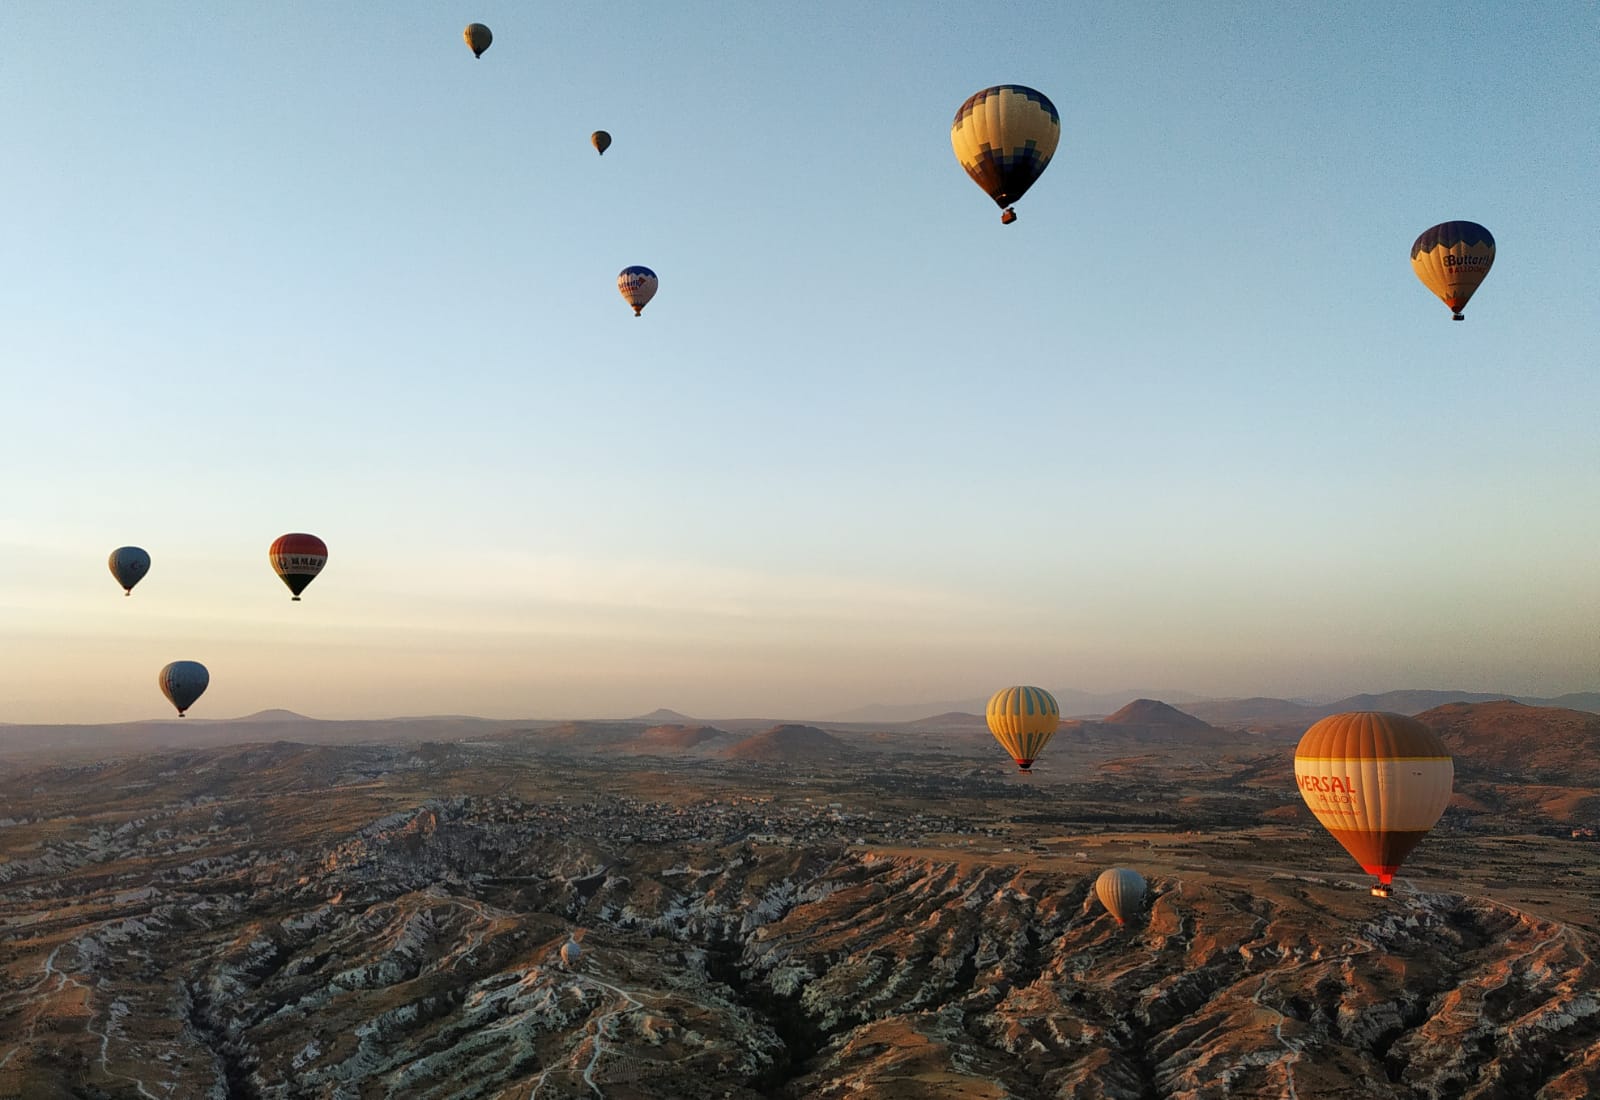 Backward weight Tentative name Cappadocia - zborul cu balonul cu aer cald